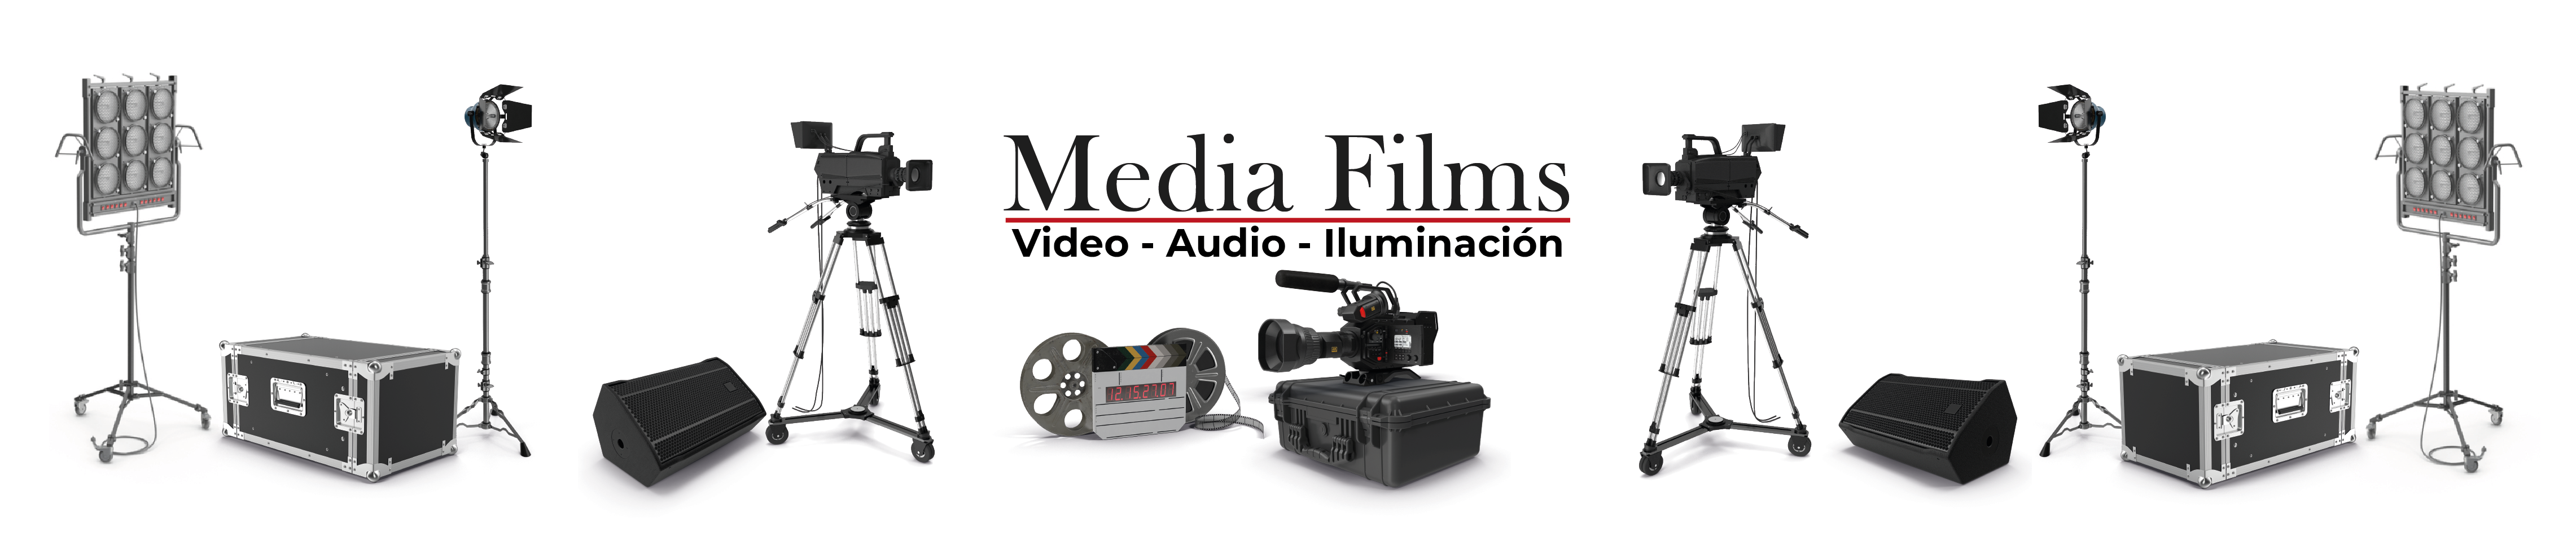 Media Films